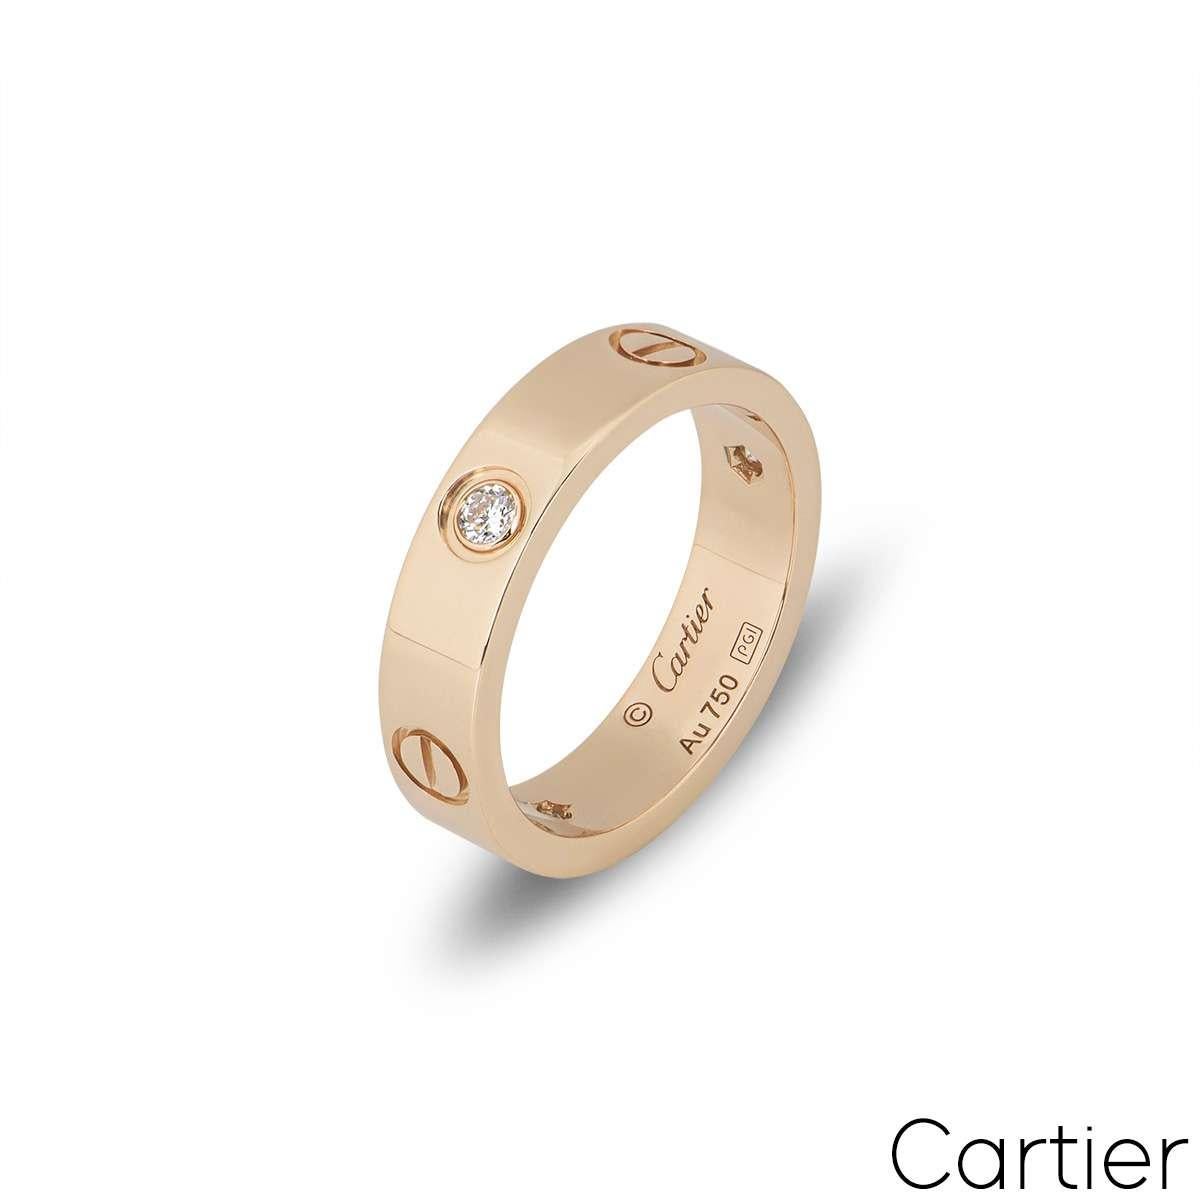 Une bague signature de la collection Love de Cartier en or rose. La bague est sertie de 3 diamants ronds de taille brillant d'une valeur totale de 0,22 ct, alternant avec les vis emblématiques de Cartier au centre de la bande. Mesurant 5,5 mm de